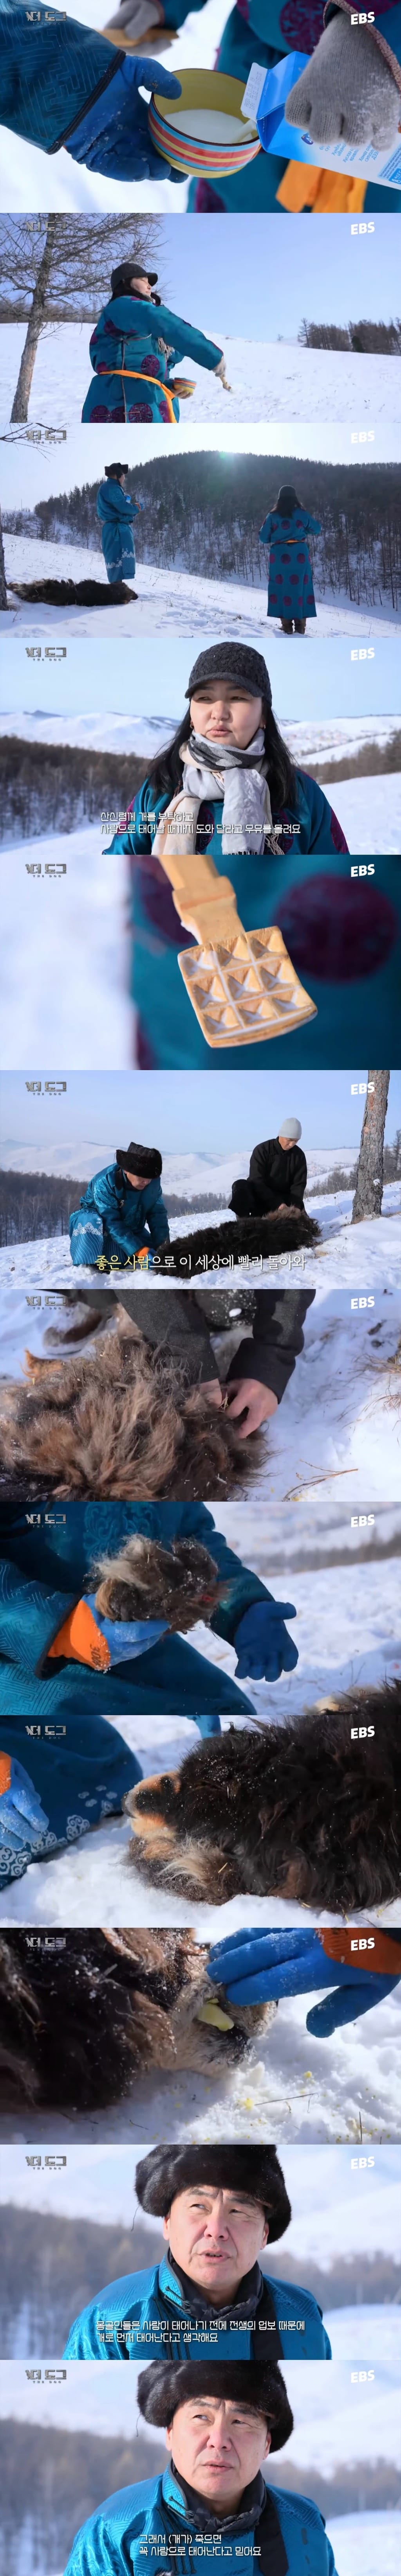 몽골에서 죽은 강아지를 떠나보내는 방법.youtube